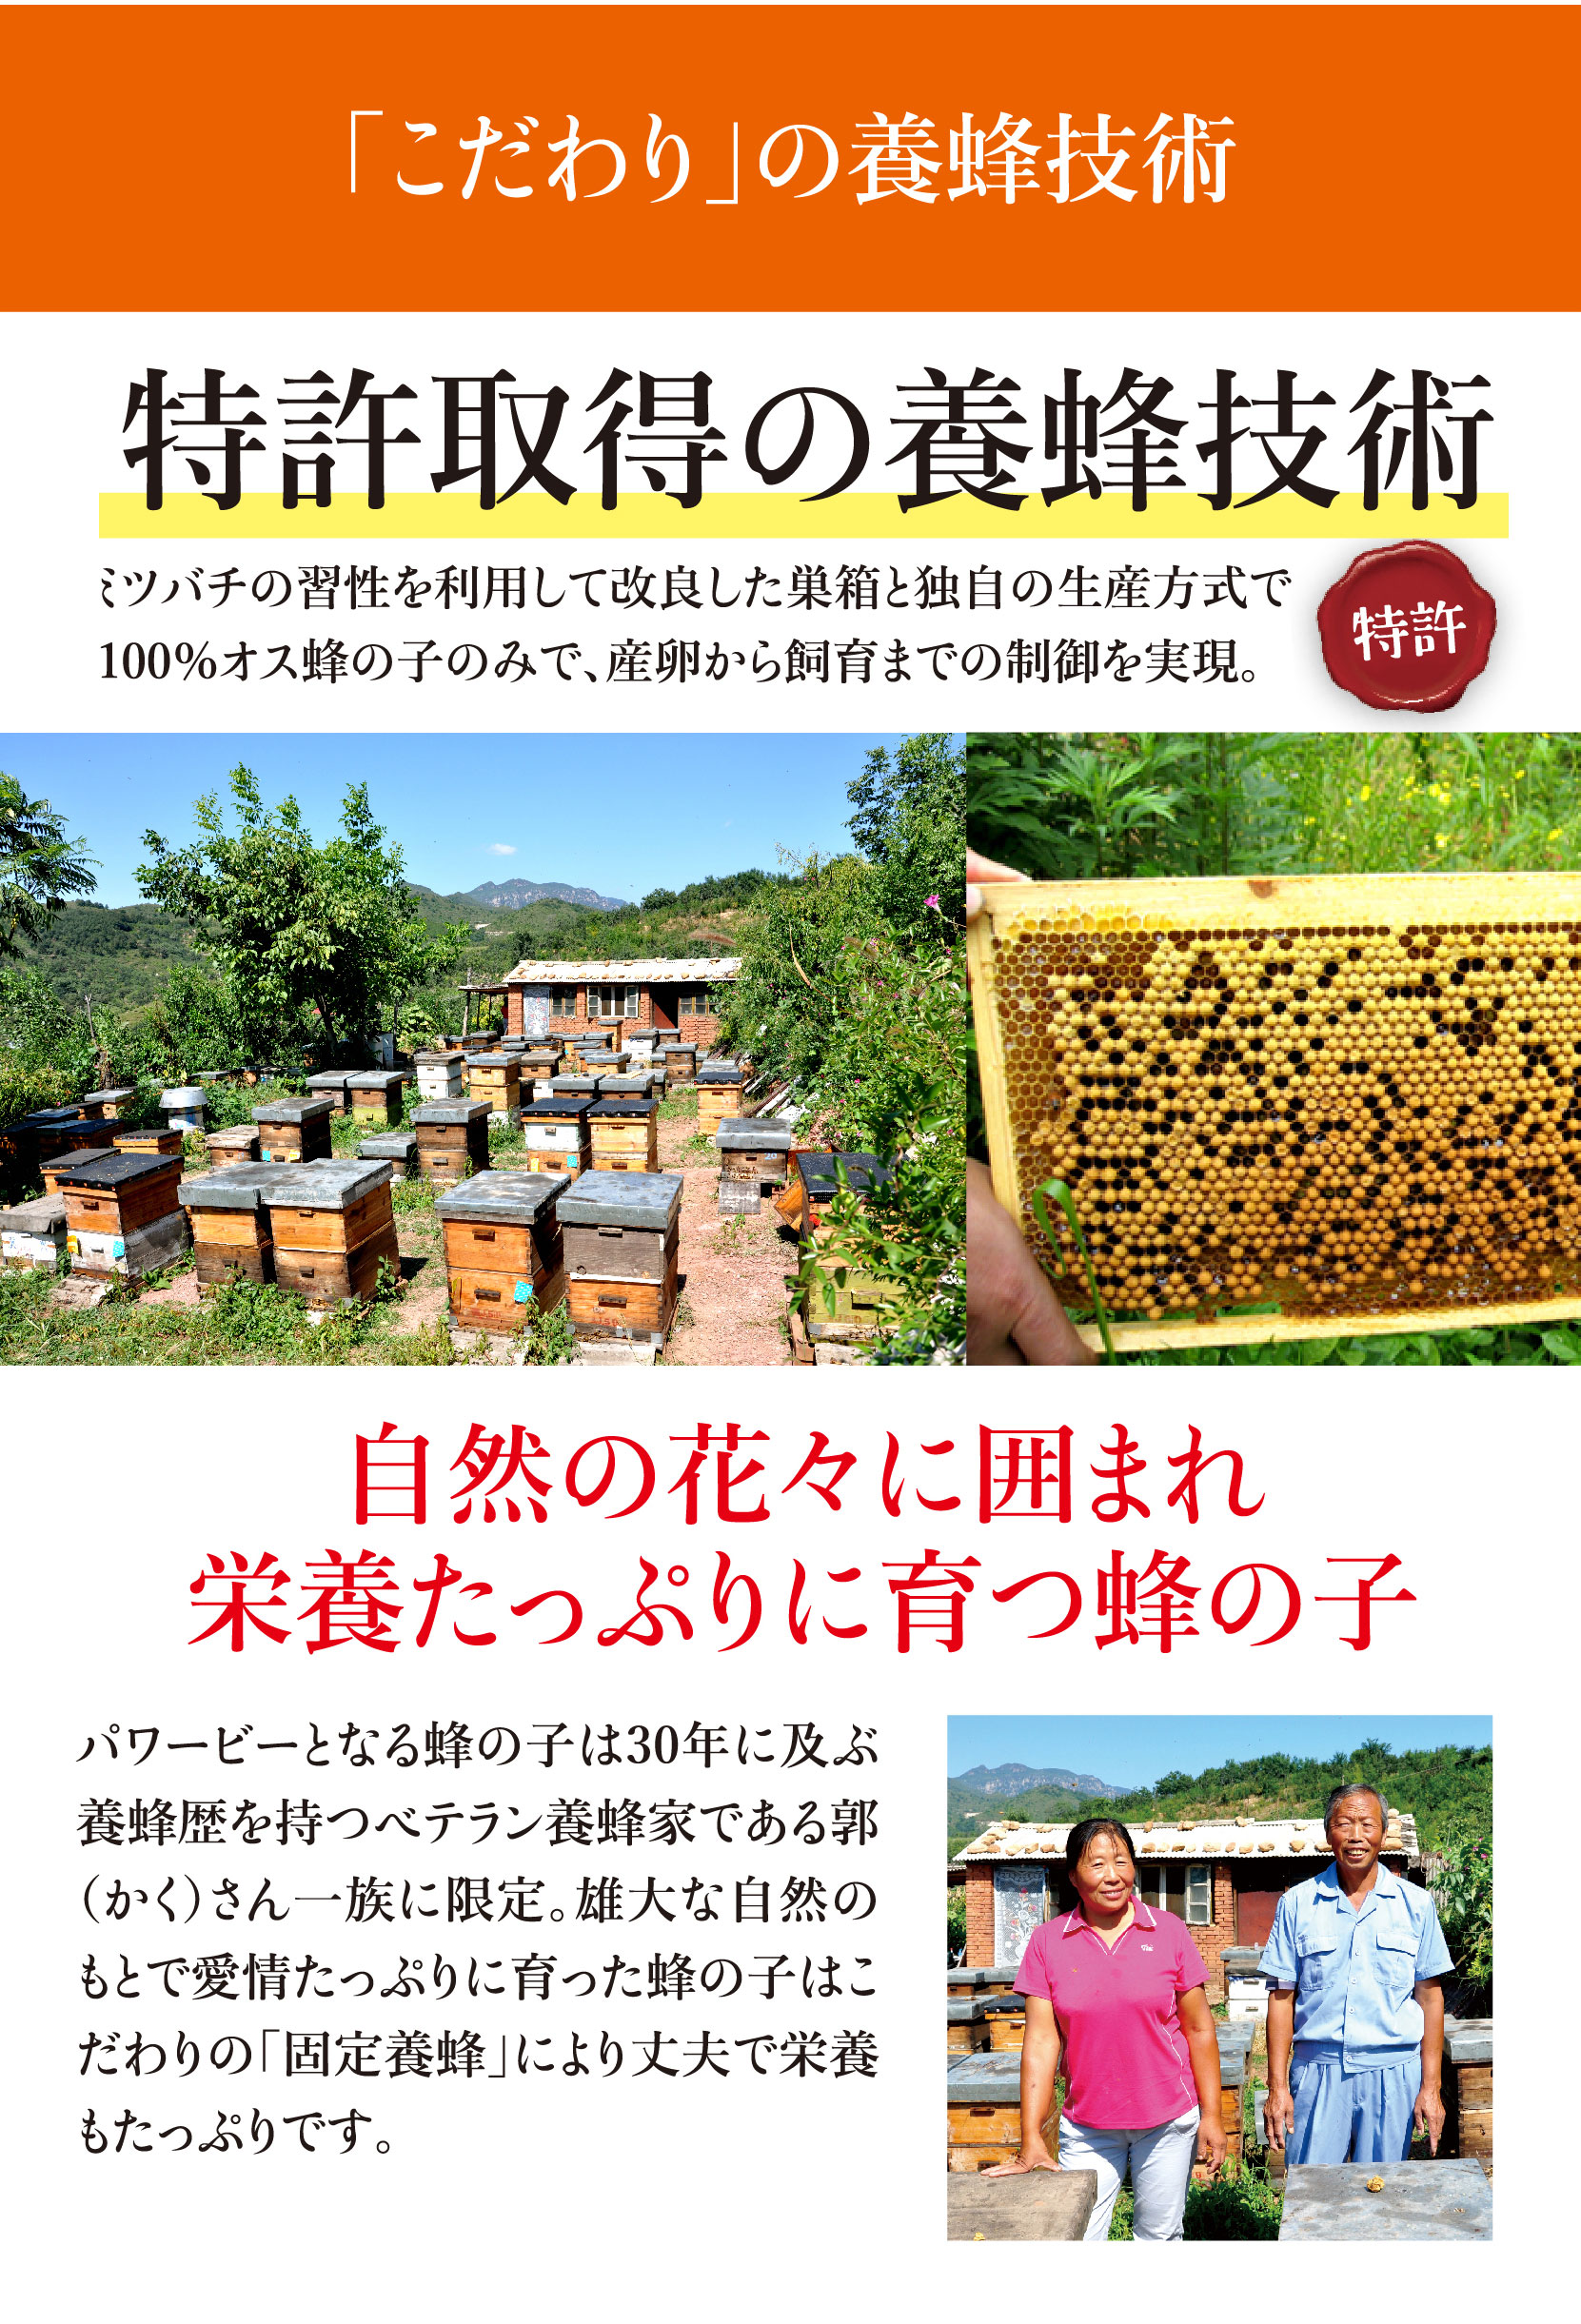 こだわりの養蜂技術、特許取得、自然に囲まれた環境で、栄養たっぷりに育つ蜂の子